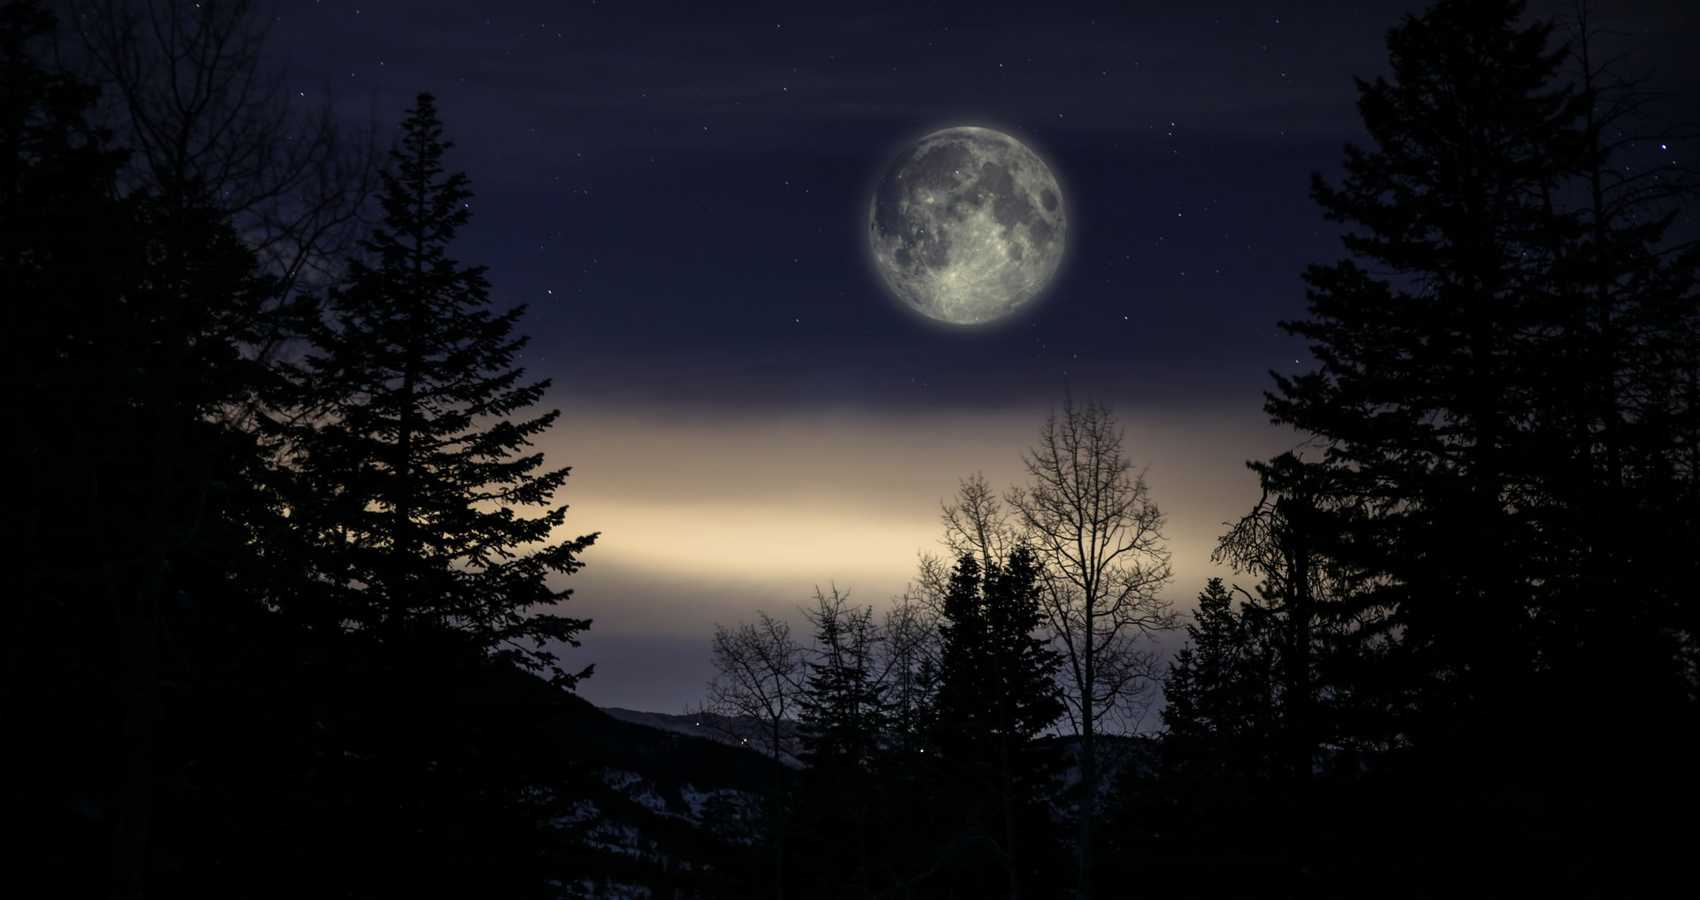 The Last Full Moon, poetry by Zeynep Şimşek at Spillwords.com